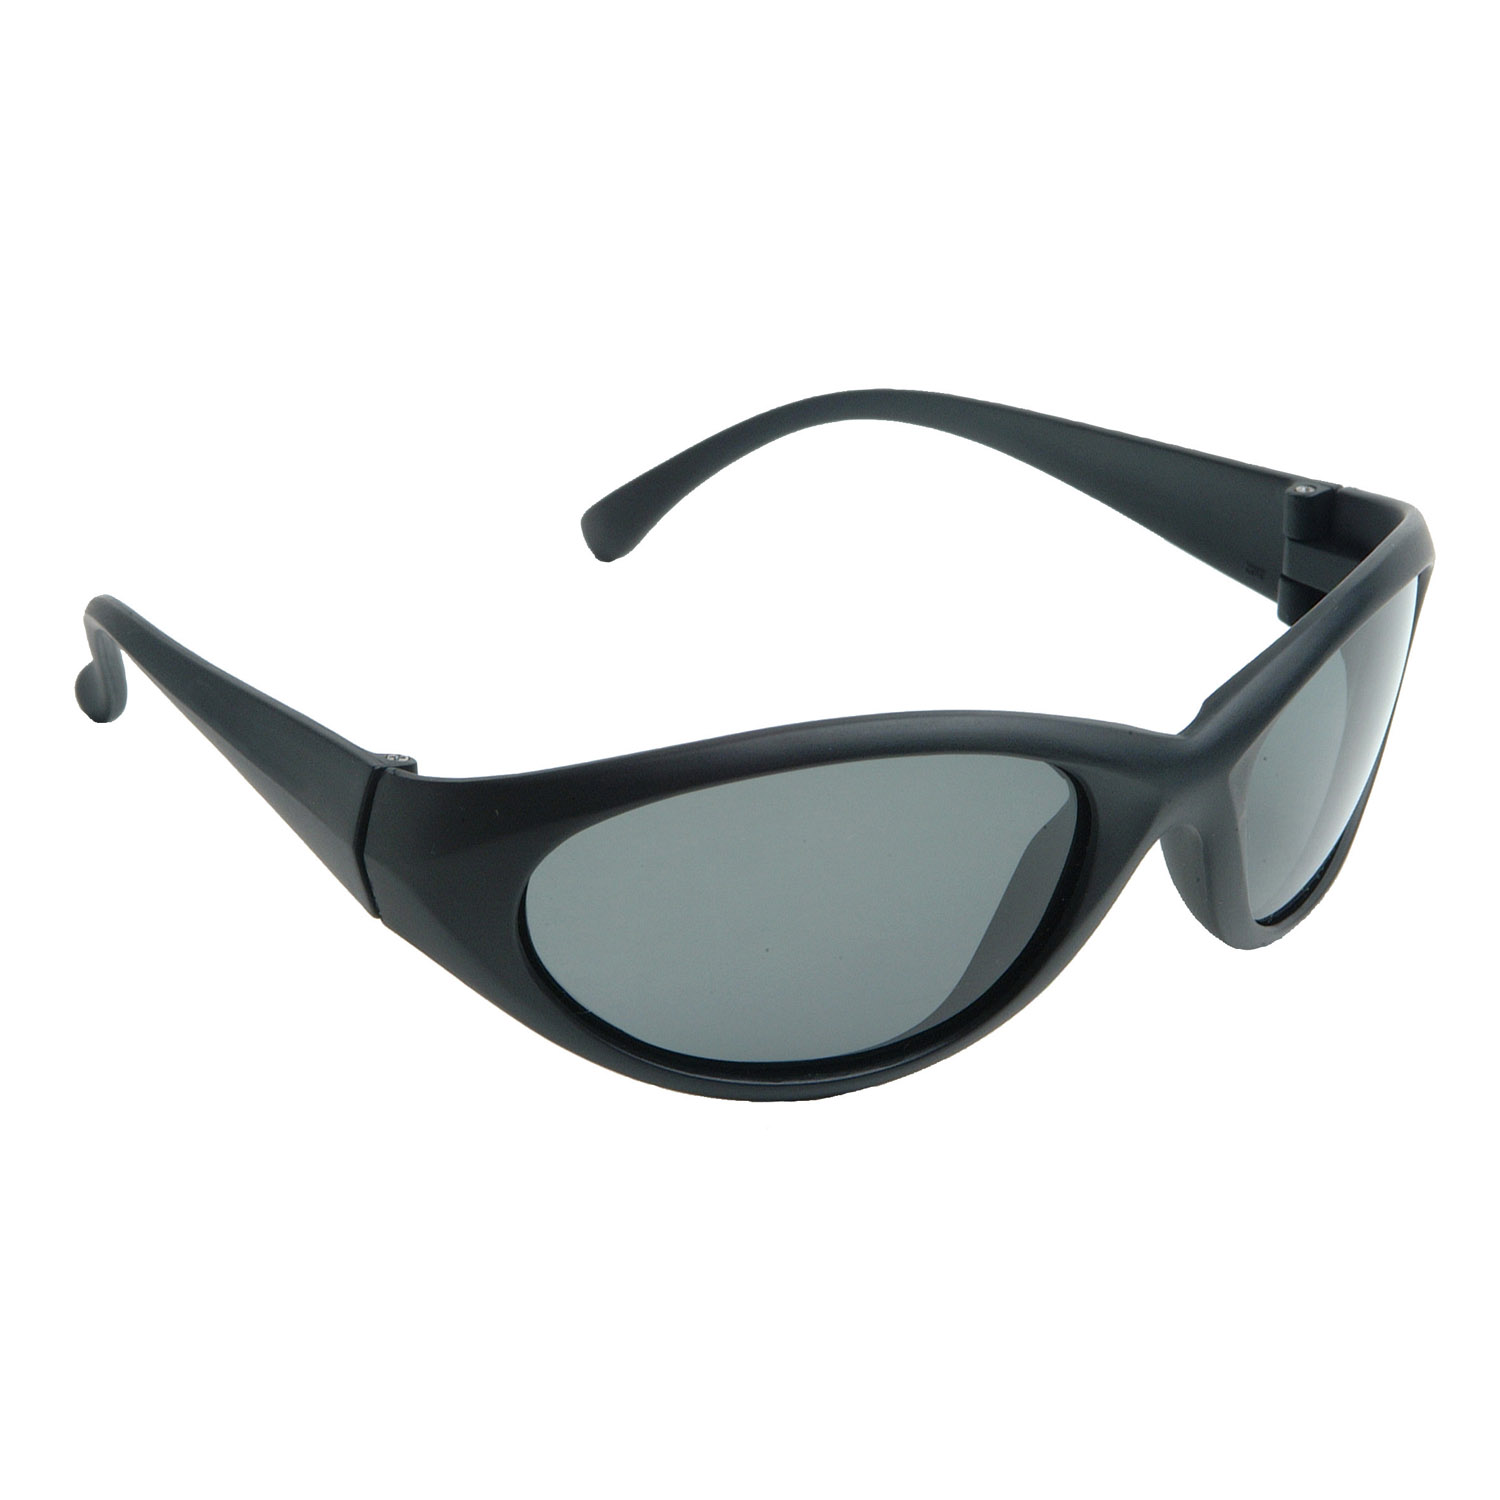 Cobalt™ Safety Eyewear - Black Frame - Smoke Lens - Tinted Lens